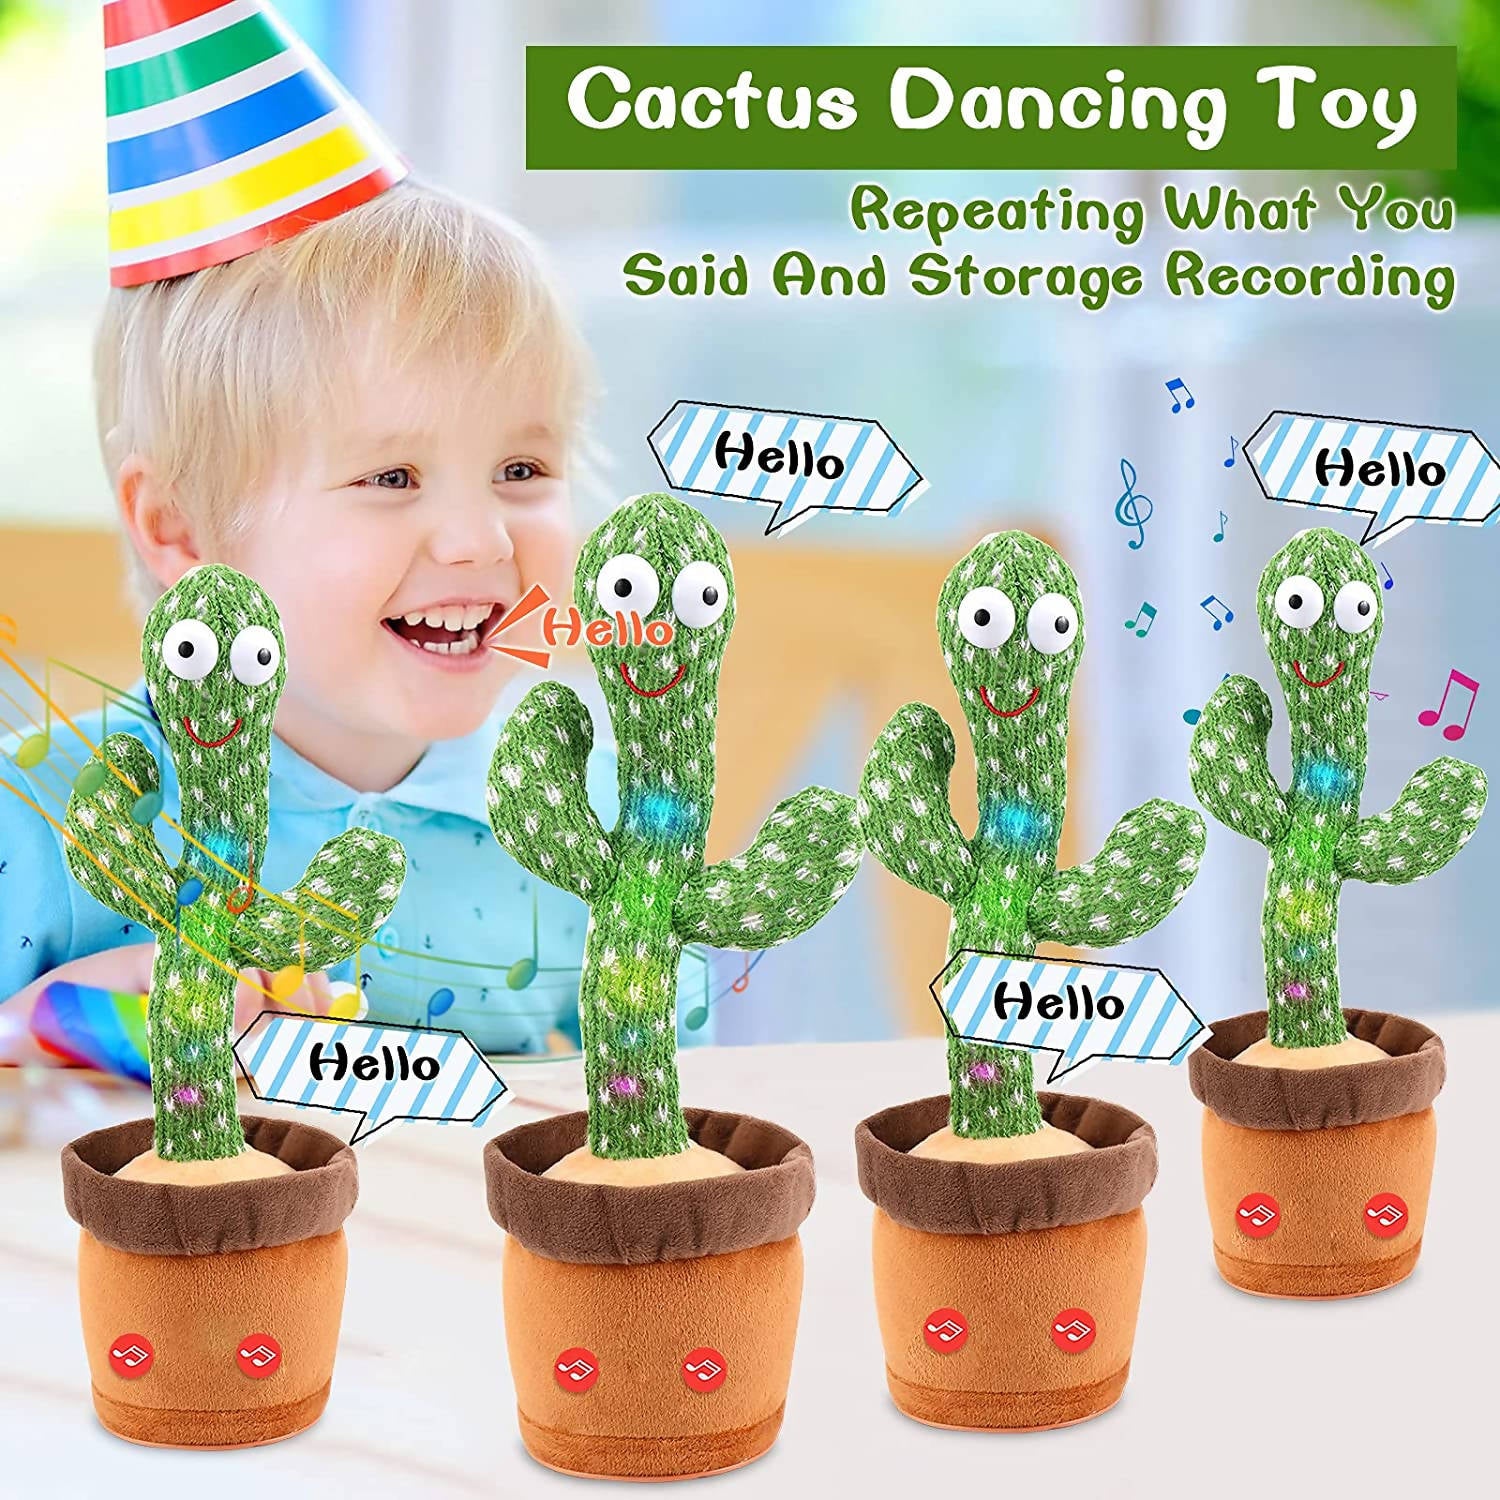 Dancing Cactus Repeat Talking Dancing Cactus Toy